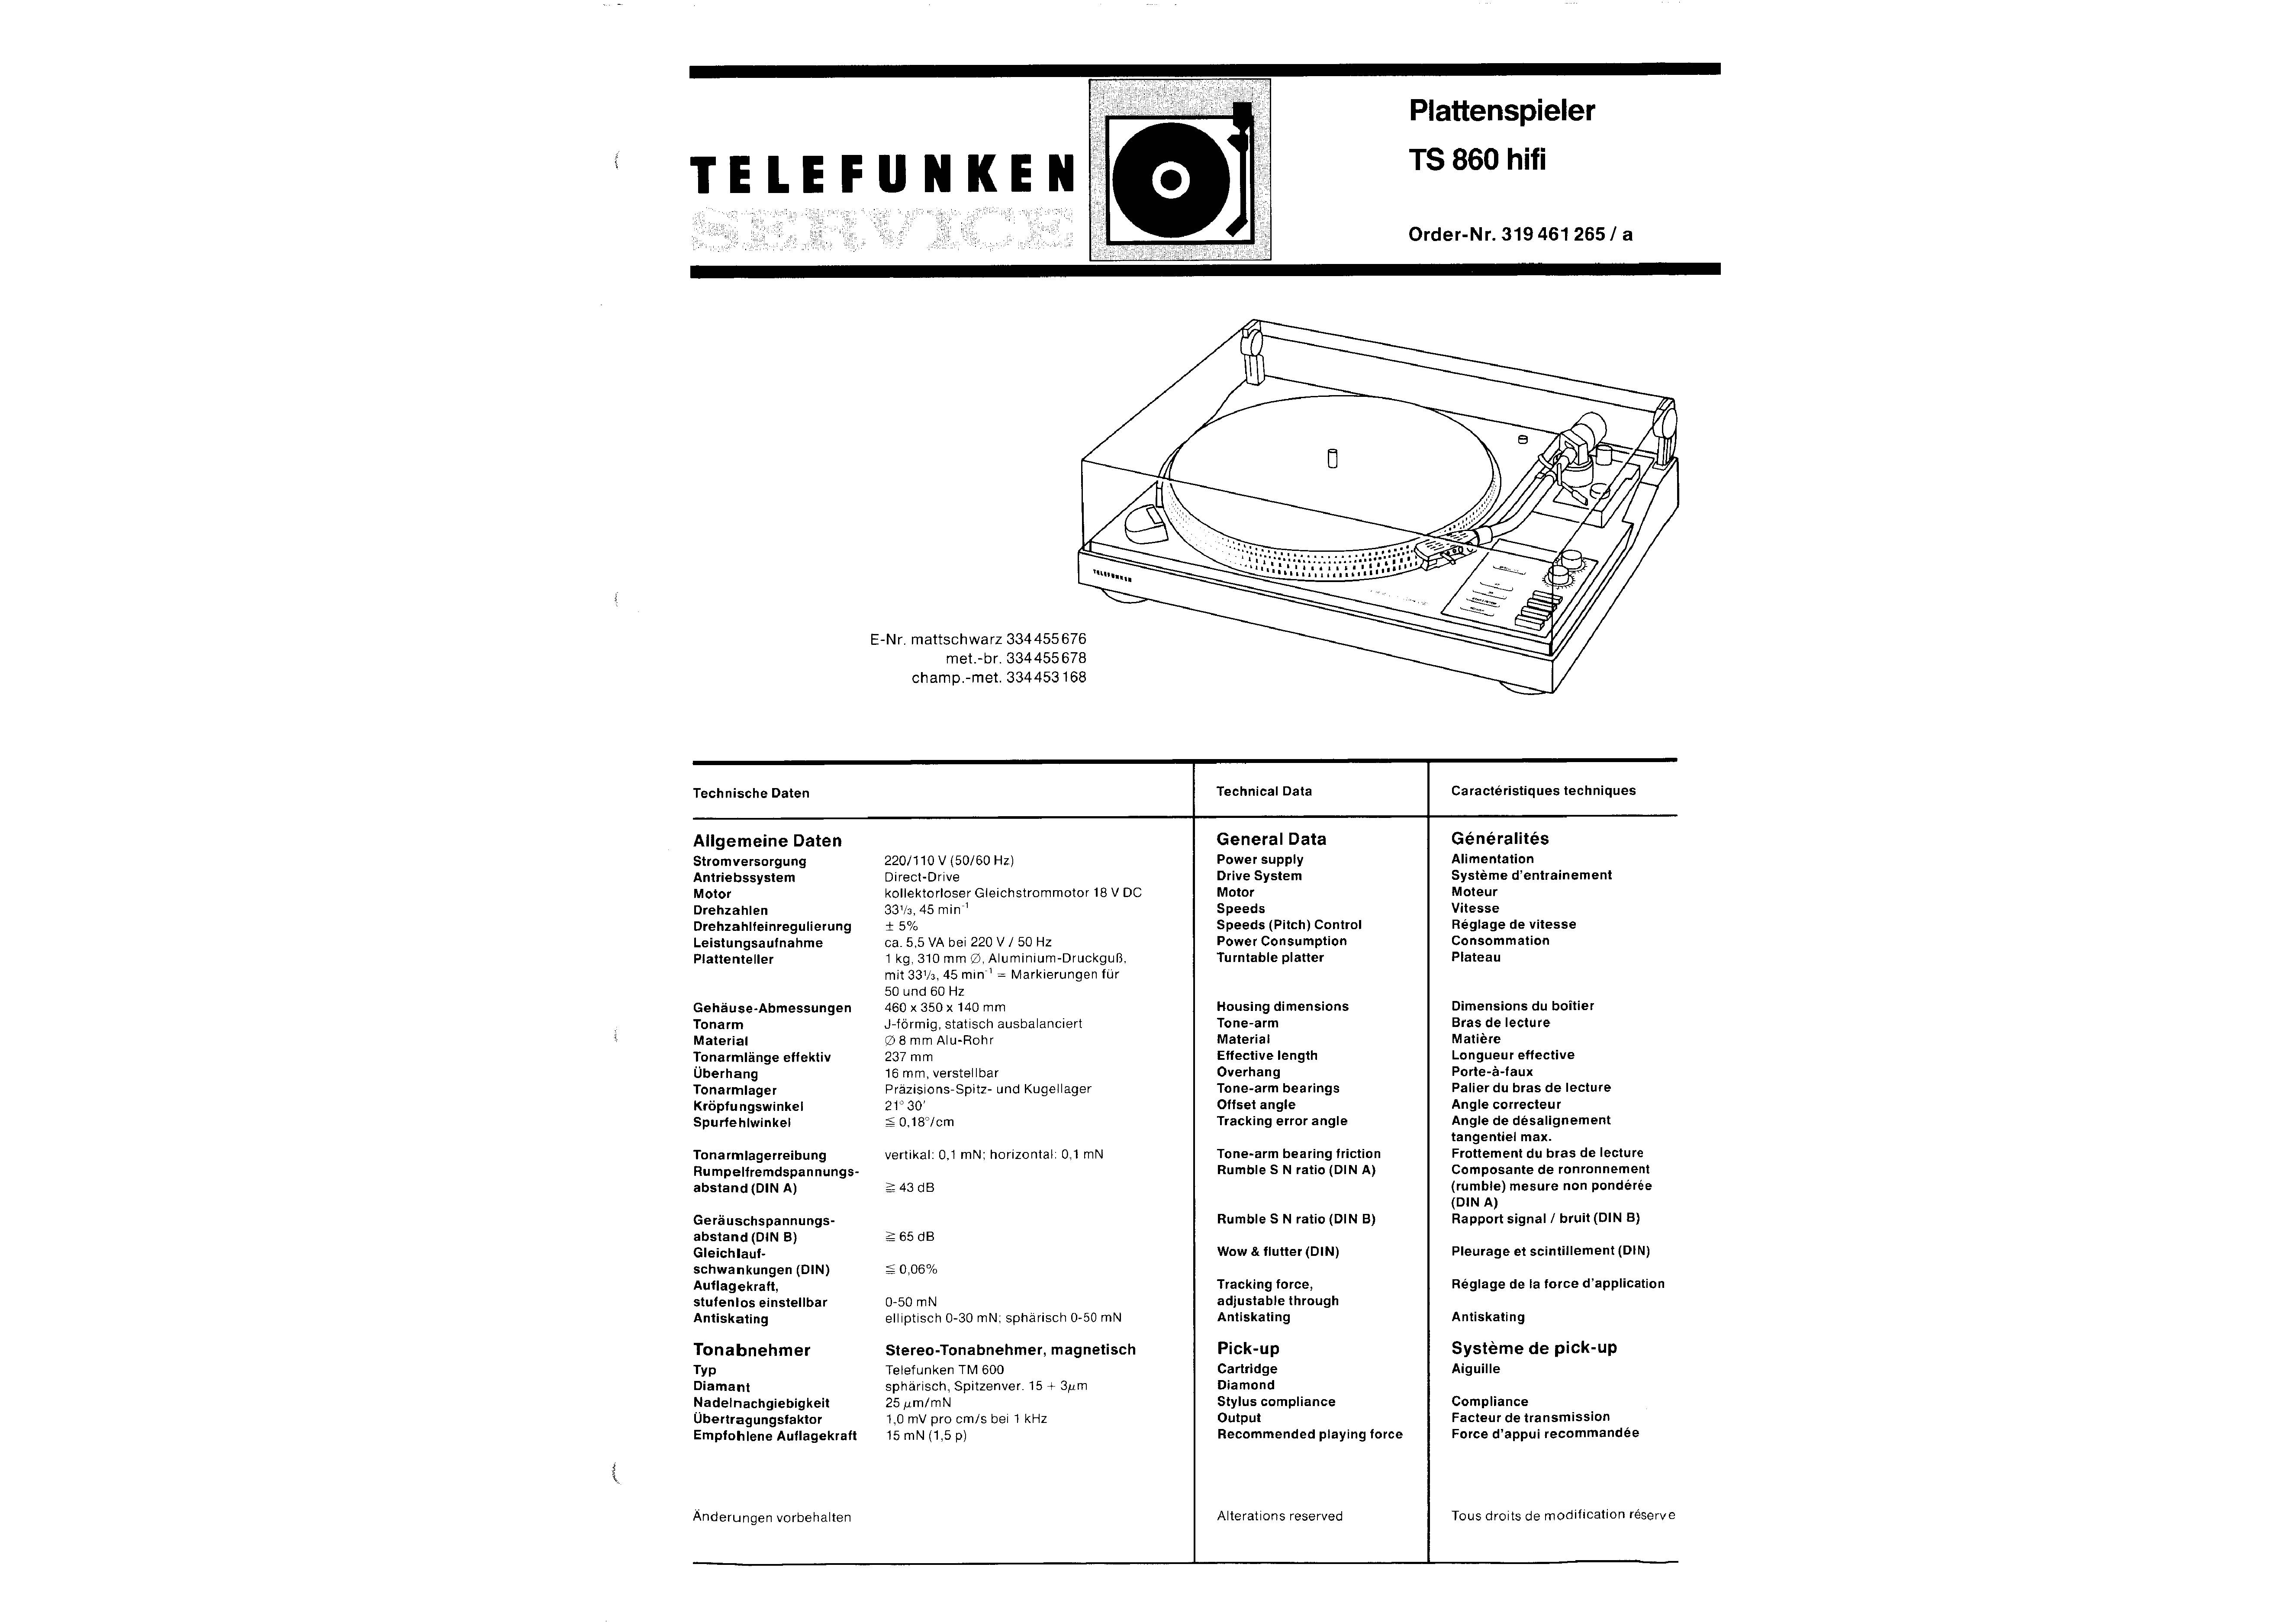 Настроить каналы телефункен. Telefunken MC-500 мануал. Телефункен TS 860. Telefunken-600. Telefunken CR-8200 service manual.